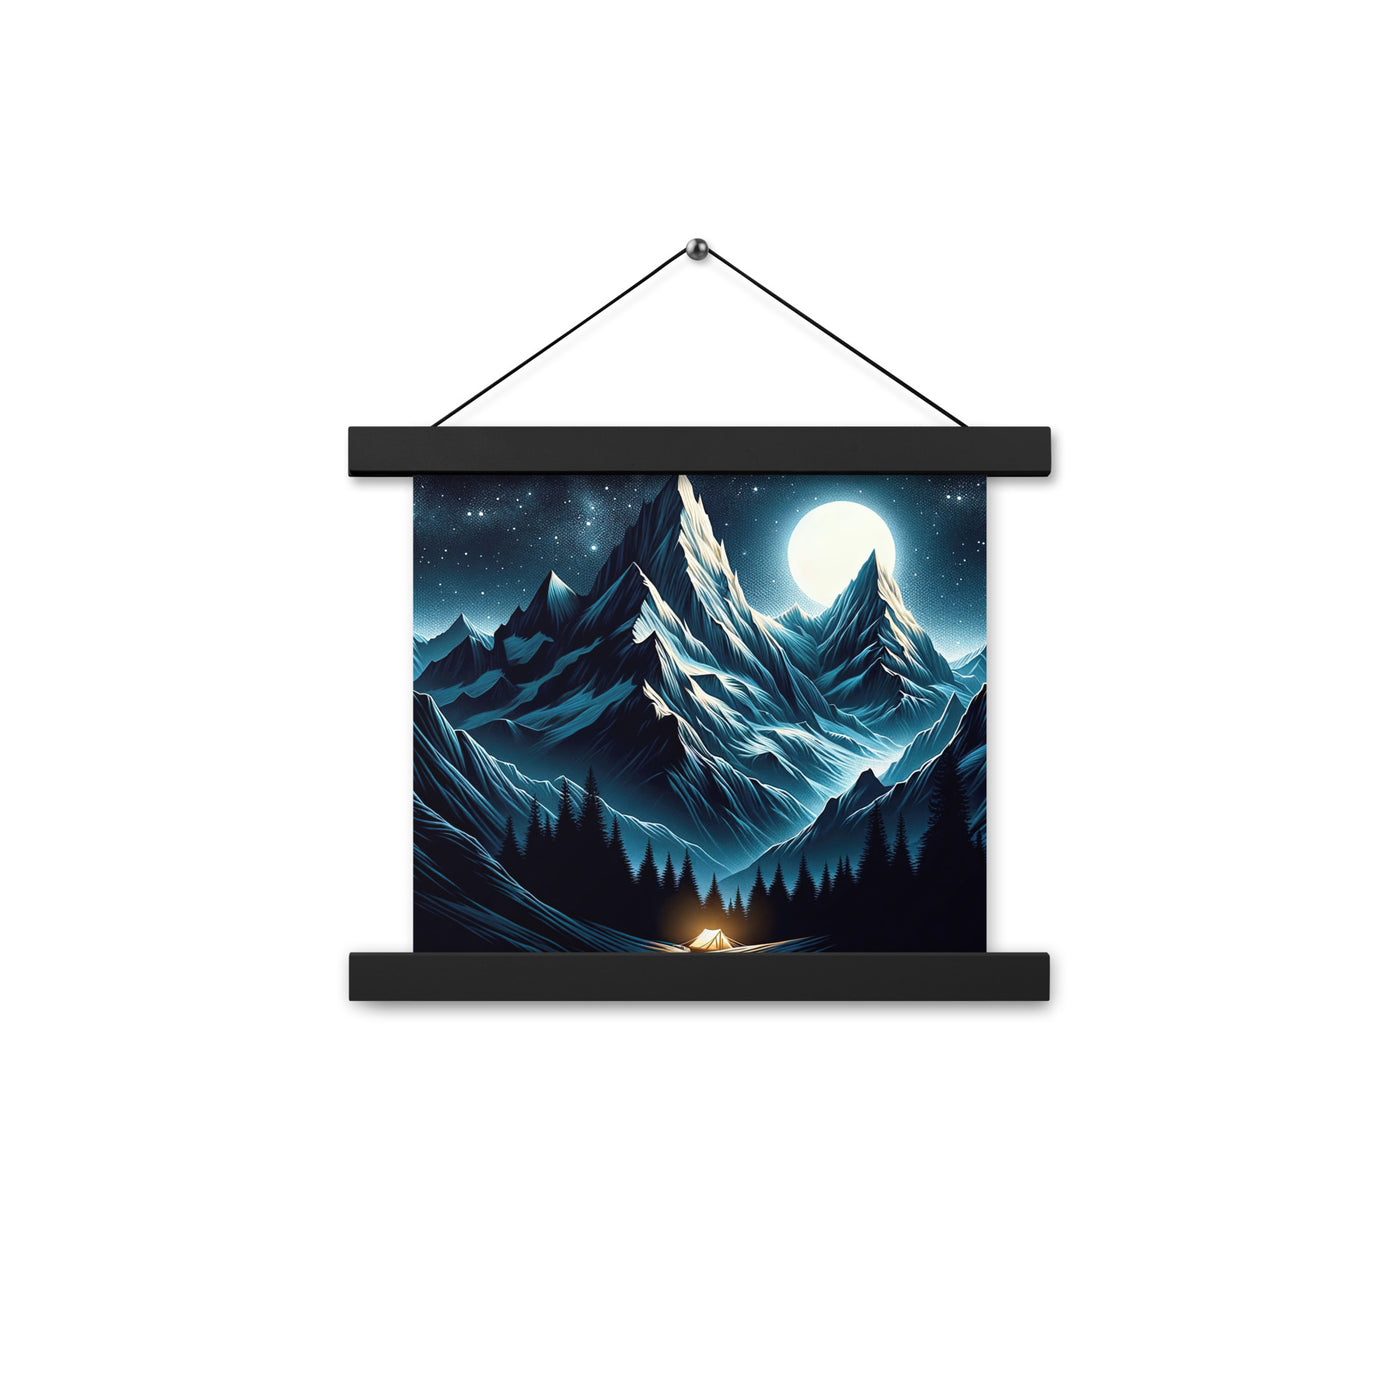 Alpennacht mit Zelt: Mondglanz auf Gipfeln und Tälern, sternenklarer Himmel - Premium Poster mit Aufhängung berge xxx yyy zzz 25.4 x 25.4 cm